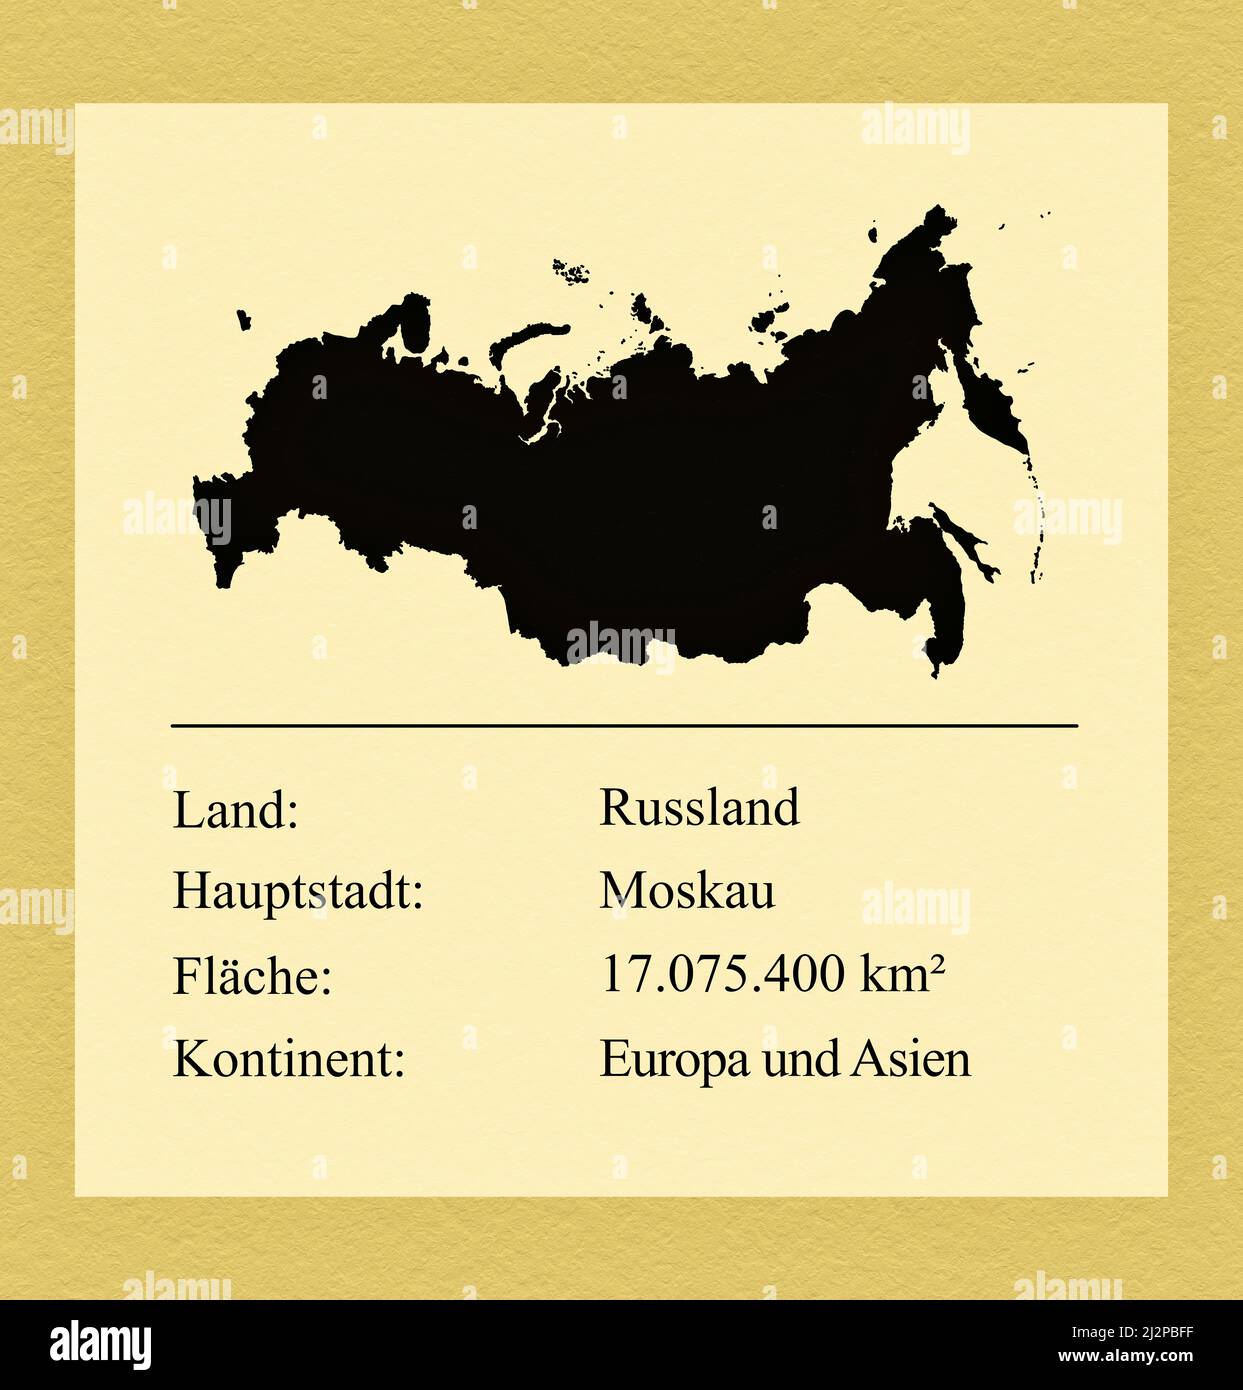 Umrisse des Landes Russland, darunter ein kleiner Steckbrief mit Ländernamen, Hauptstadt, Fläche und Kontinent Stock Photo